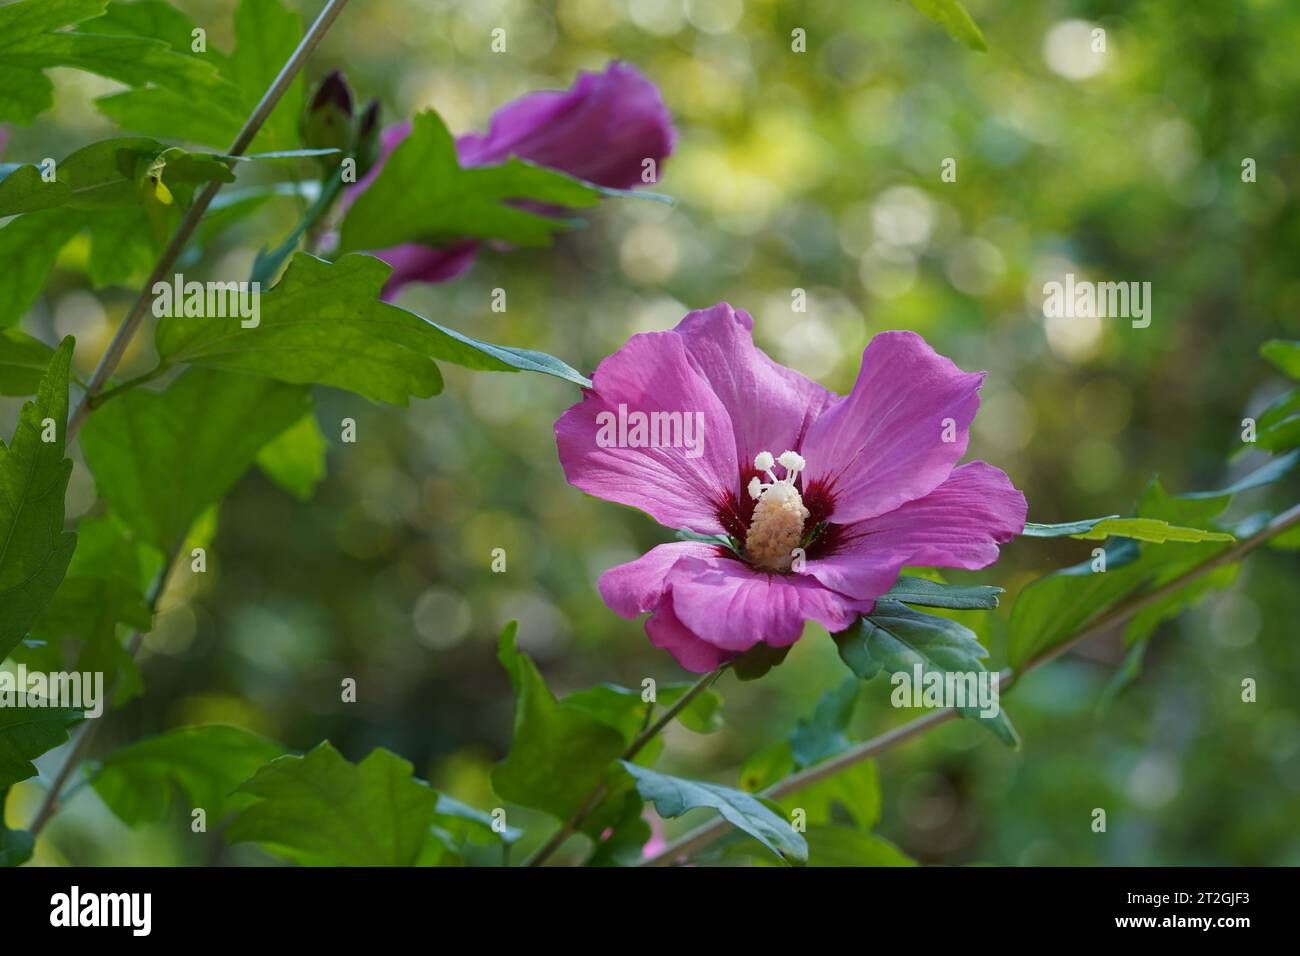 Fleur en latin appelée hibiscus syricus appartenant à la famille des Malvaceae close up. Sur le fond il y a des feuilles et un bourgeon d'une autre fleur. Banque D'Images